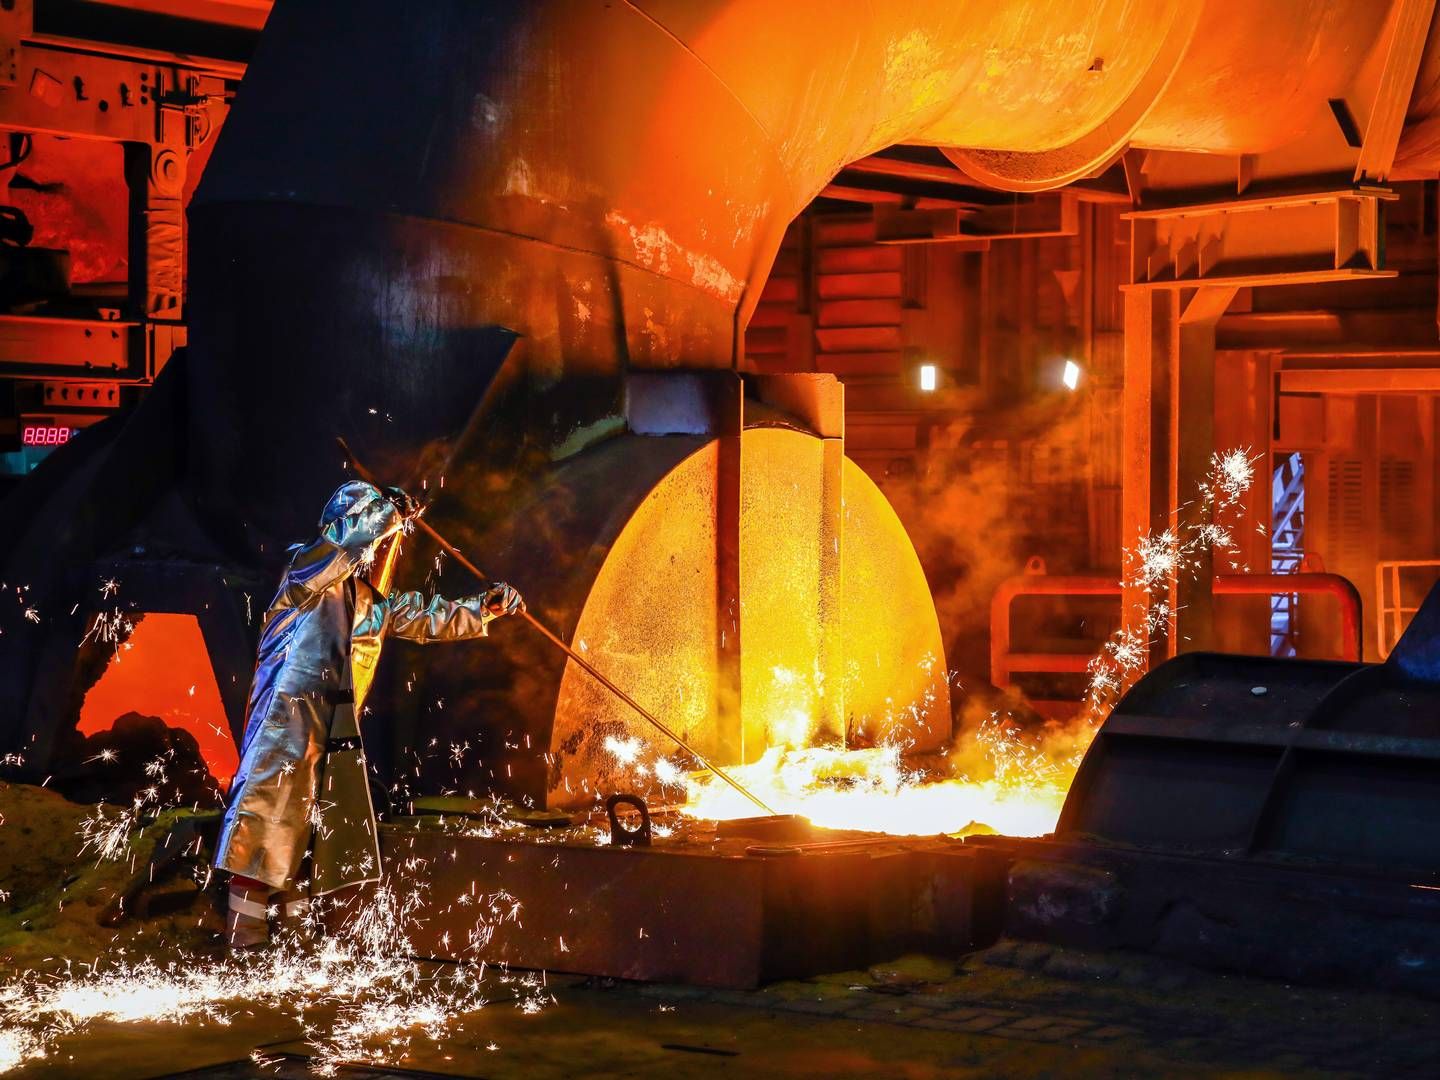 ThyssenKrupp Steel, ein Stahlarbeiter im Schutzanzug entnimmt eine 1500 Grad heiße Roheisenprobe beim Abstich am Hochofen. In der Stahlindustrie geht es um den kompletten Umbau der Produktionsverfahren, um grünen Stahl produzieren zu können. | Foto: picture alliance / Rupert Oberhäuser